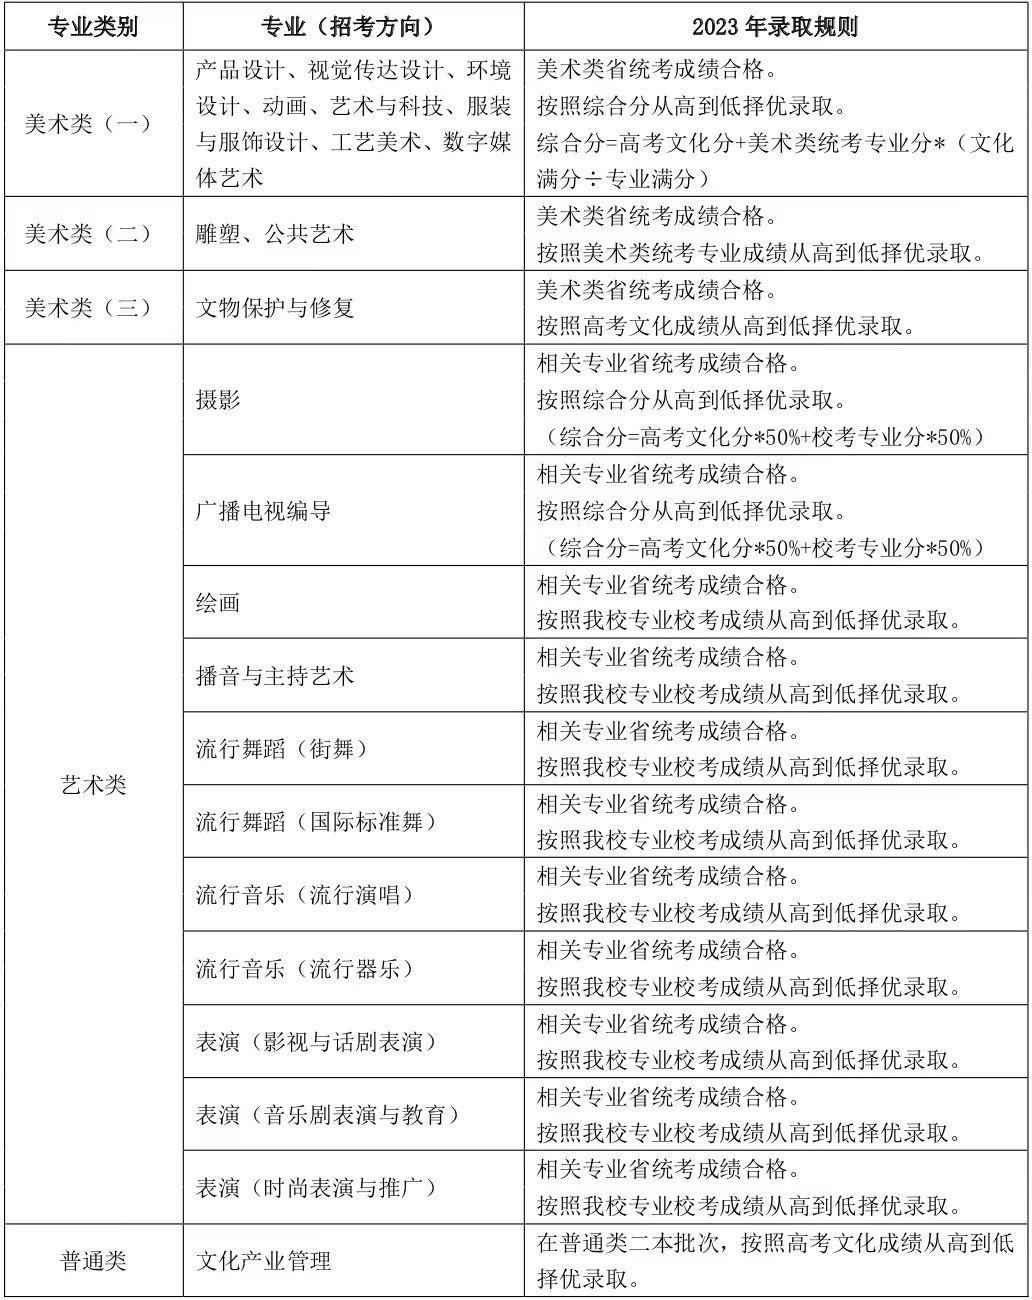 上海视觉艺术学院艺术类录取规则